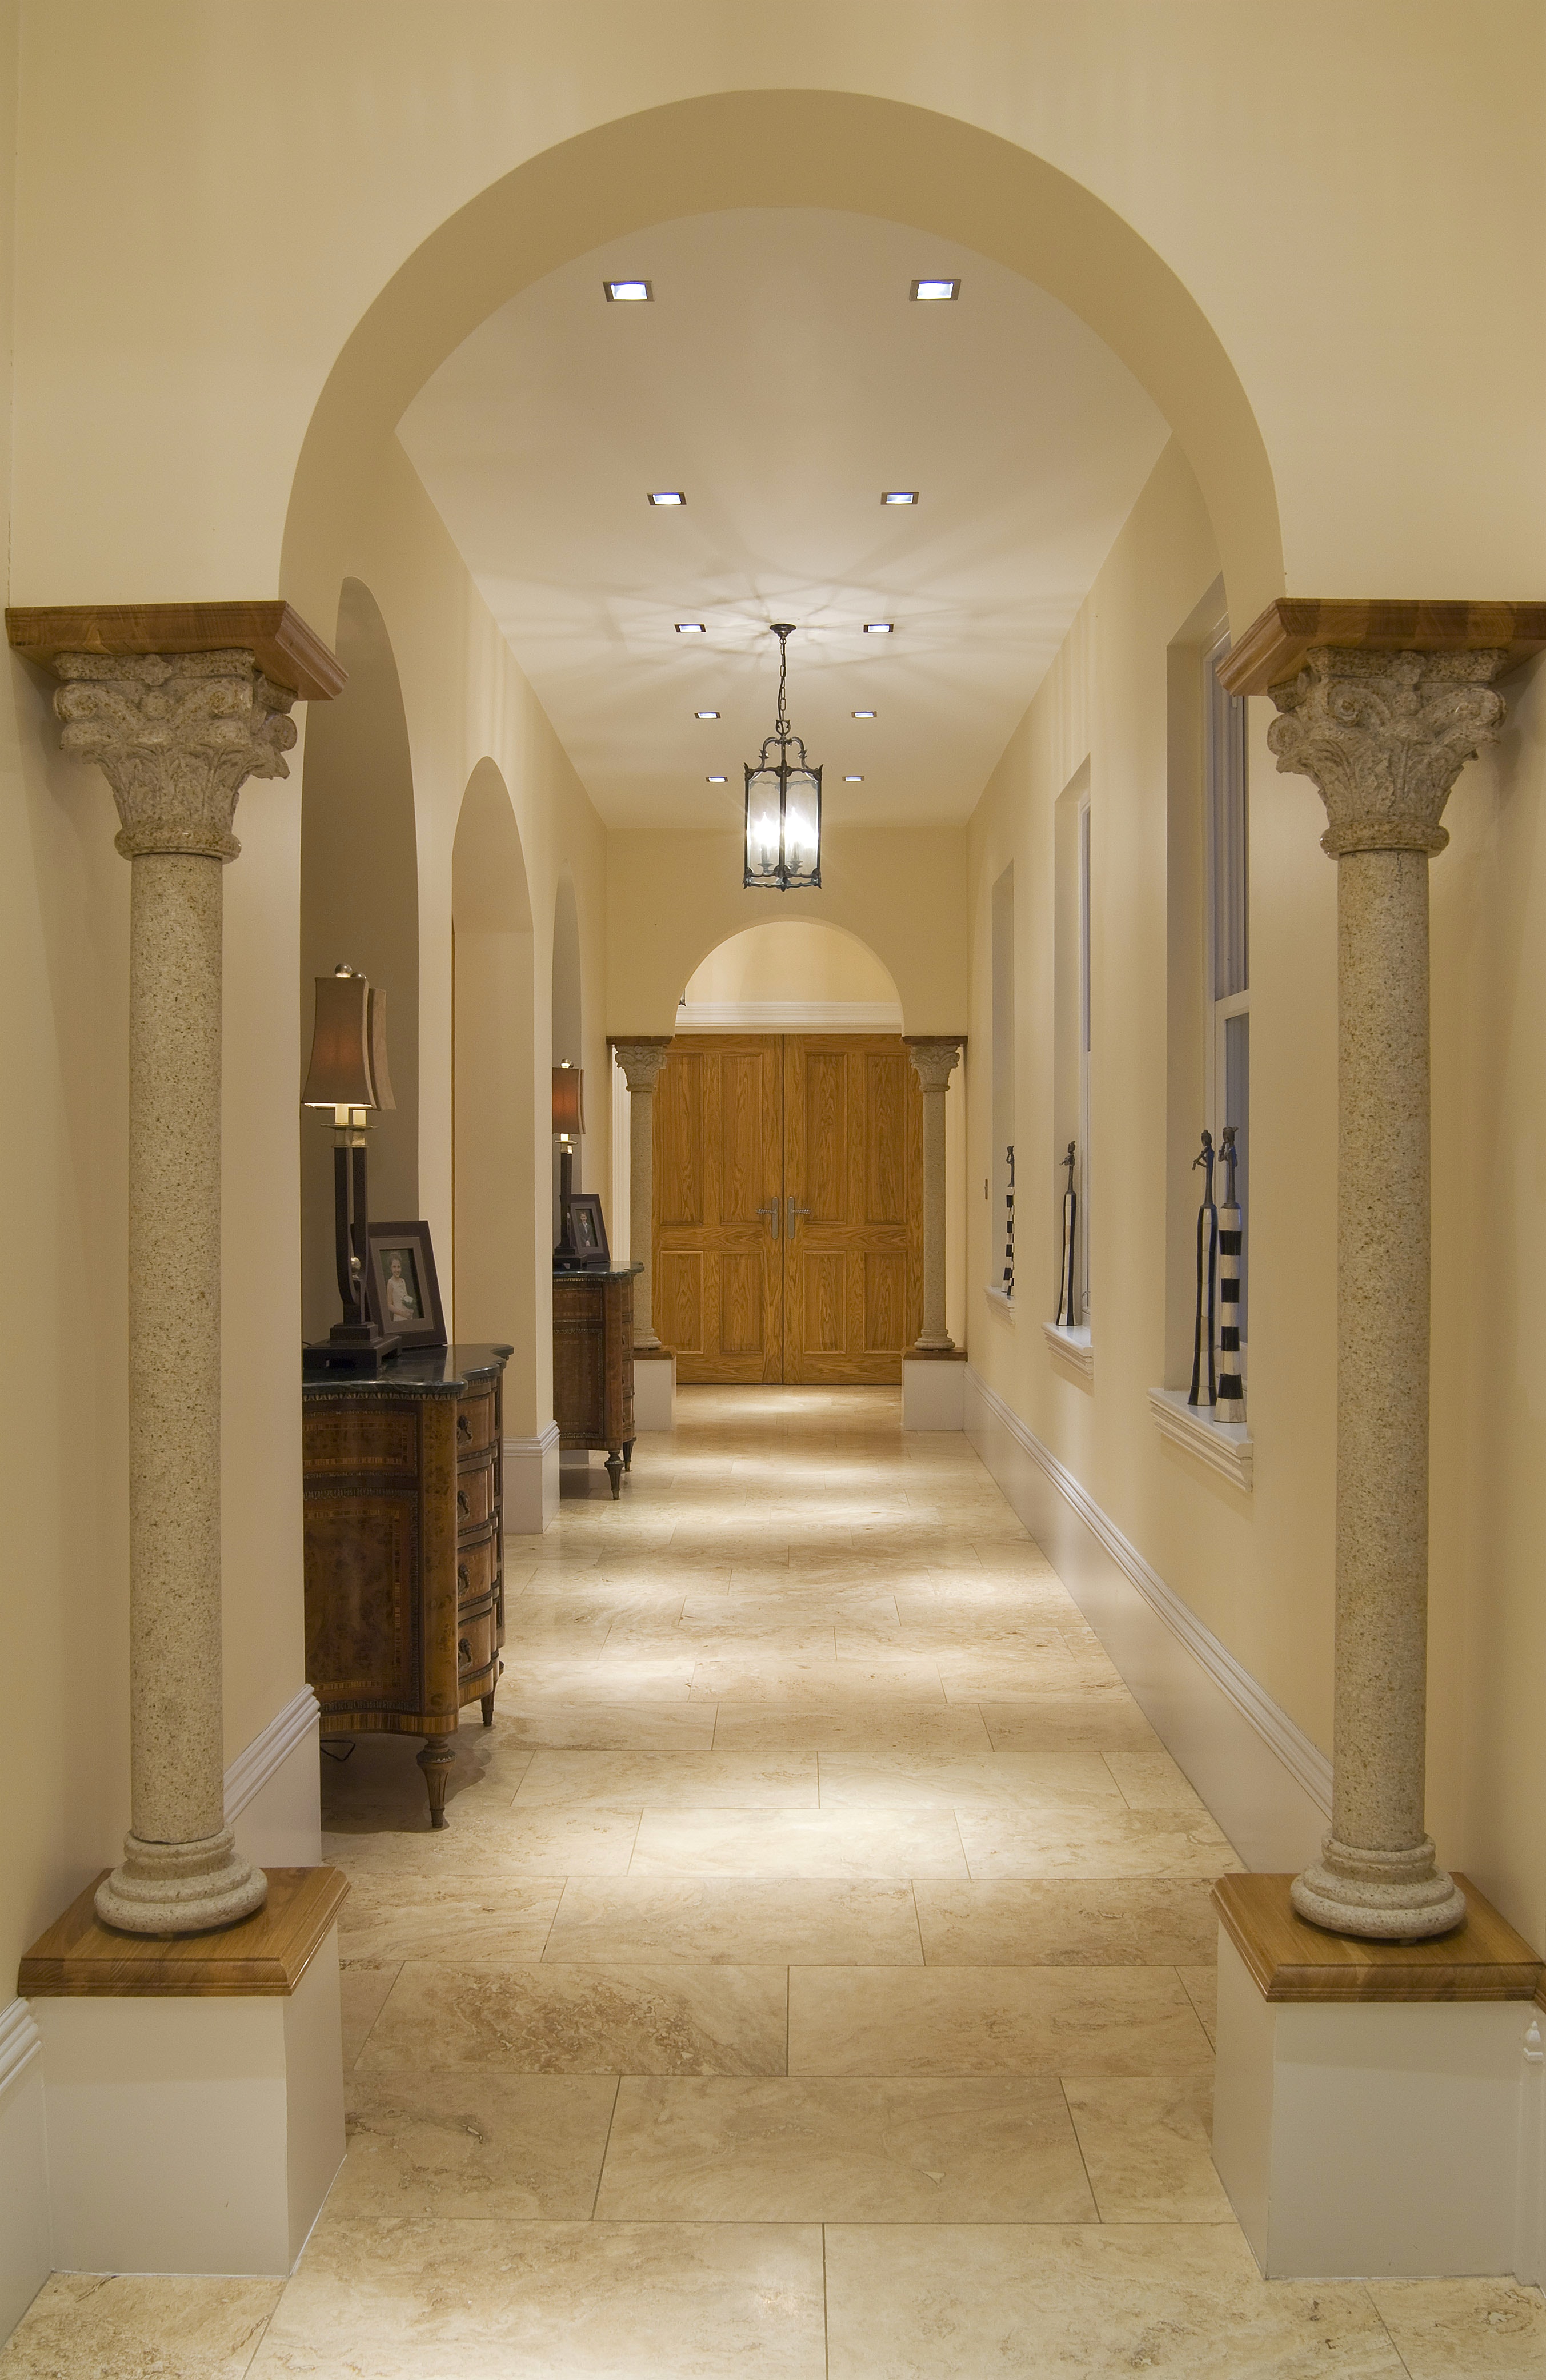 Дизайн коридора с аркой с колоннами